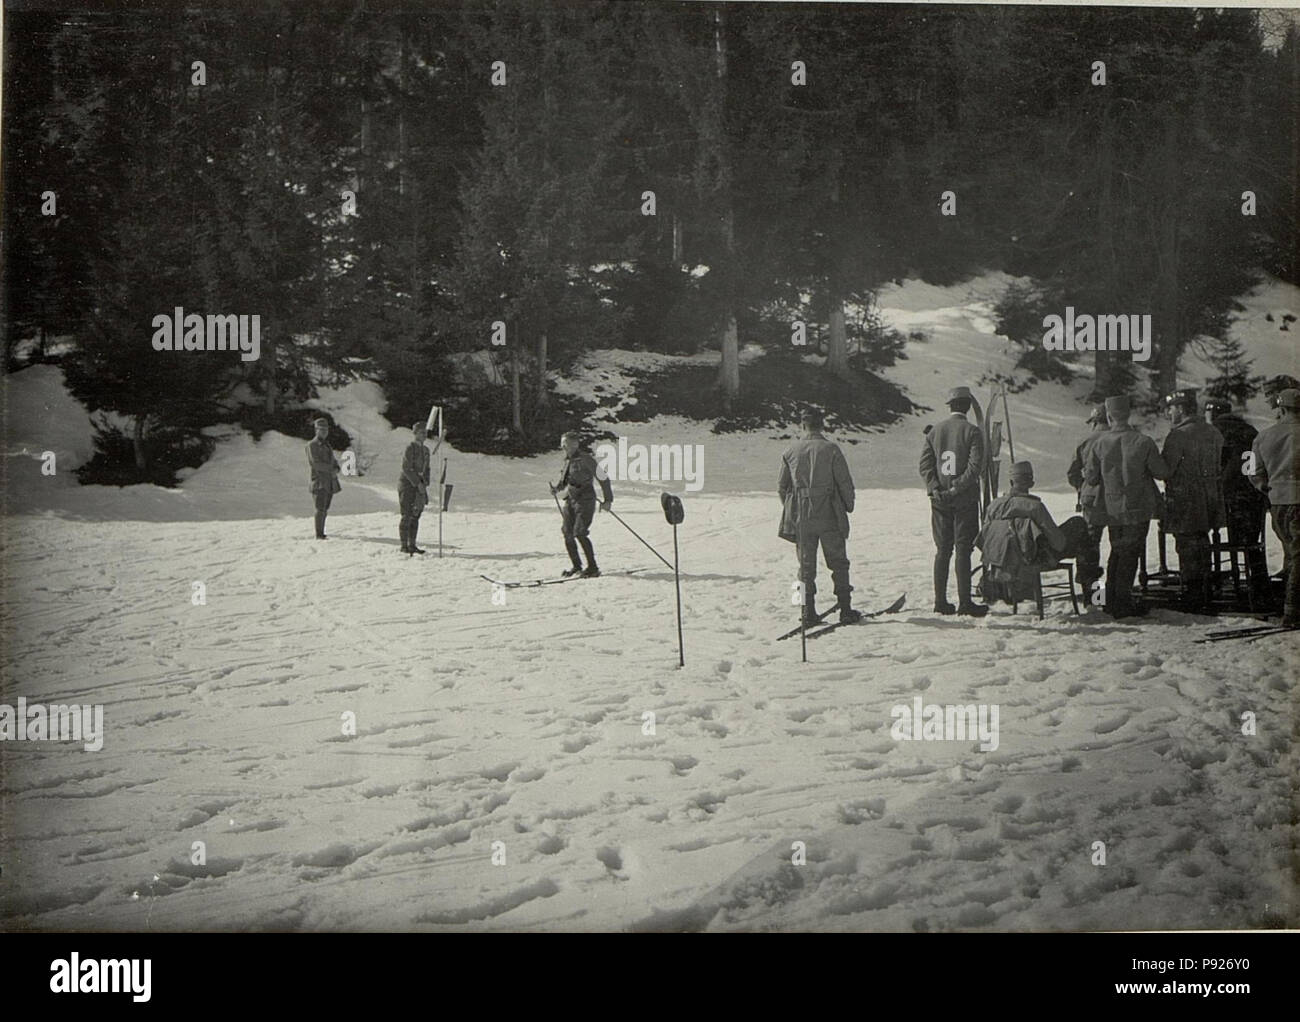 418 Militär Skilaufen a Villach. Offizierslaufen Ziel. (BildID 15468032) Foto Stock